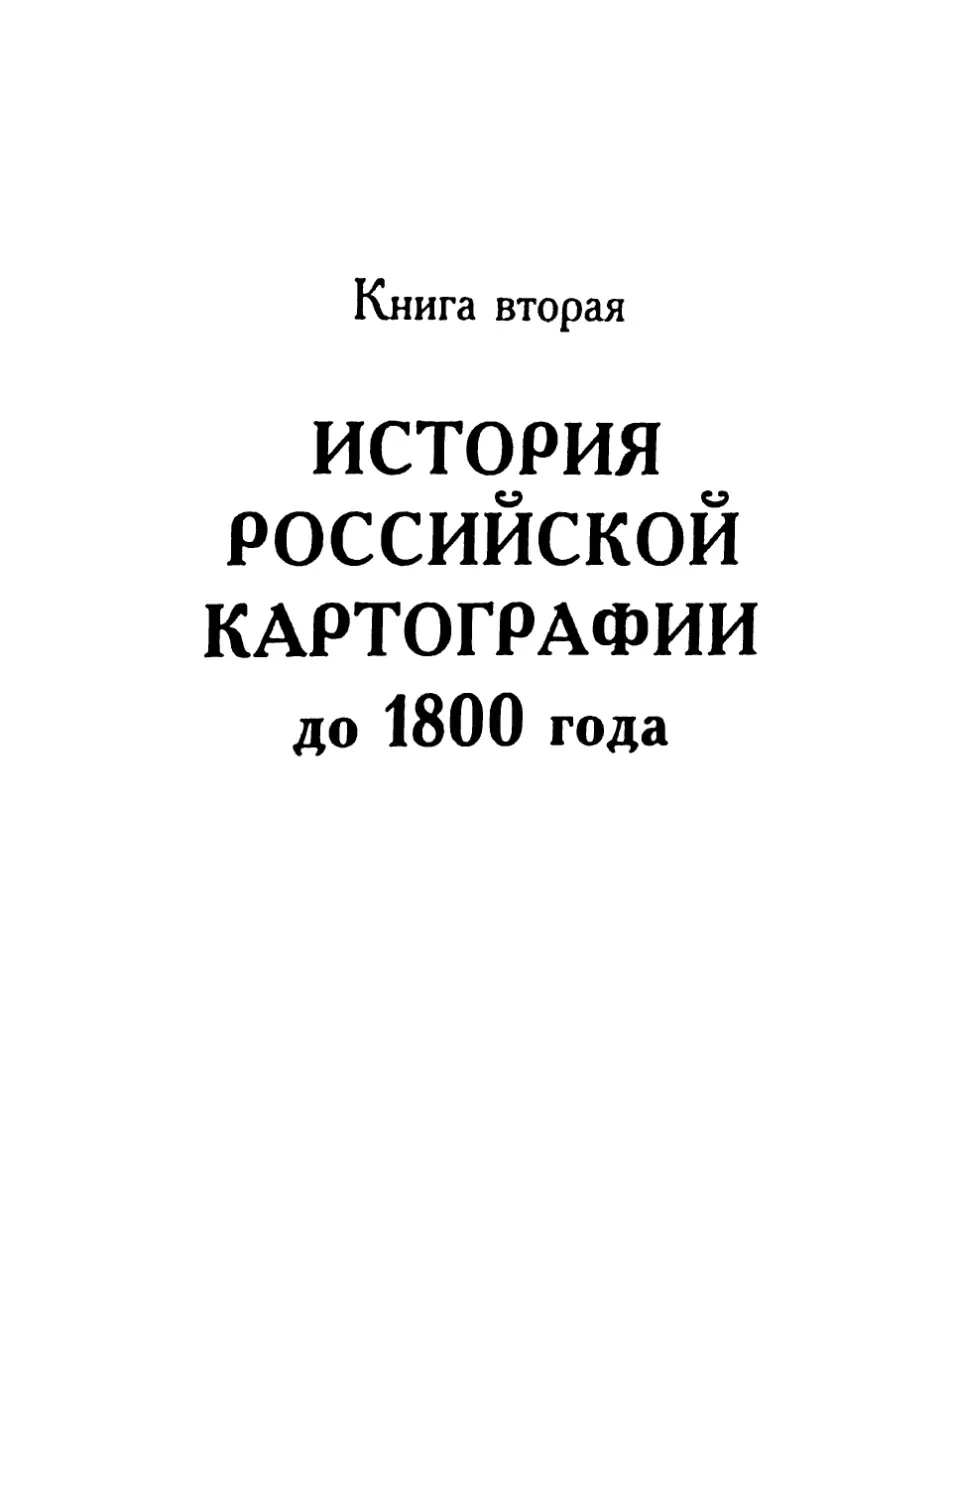 Книга вторая. ИСТОРИЯ РОССИЙСКОЙ КАРТОГРАФИИ ДО 1800 Г